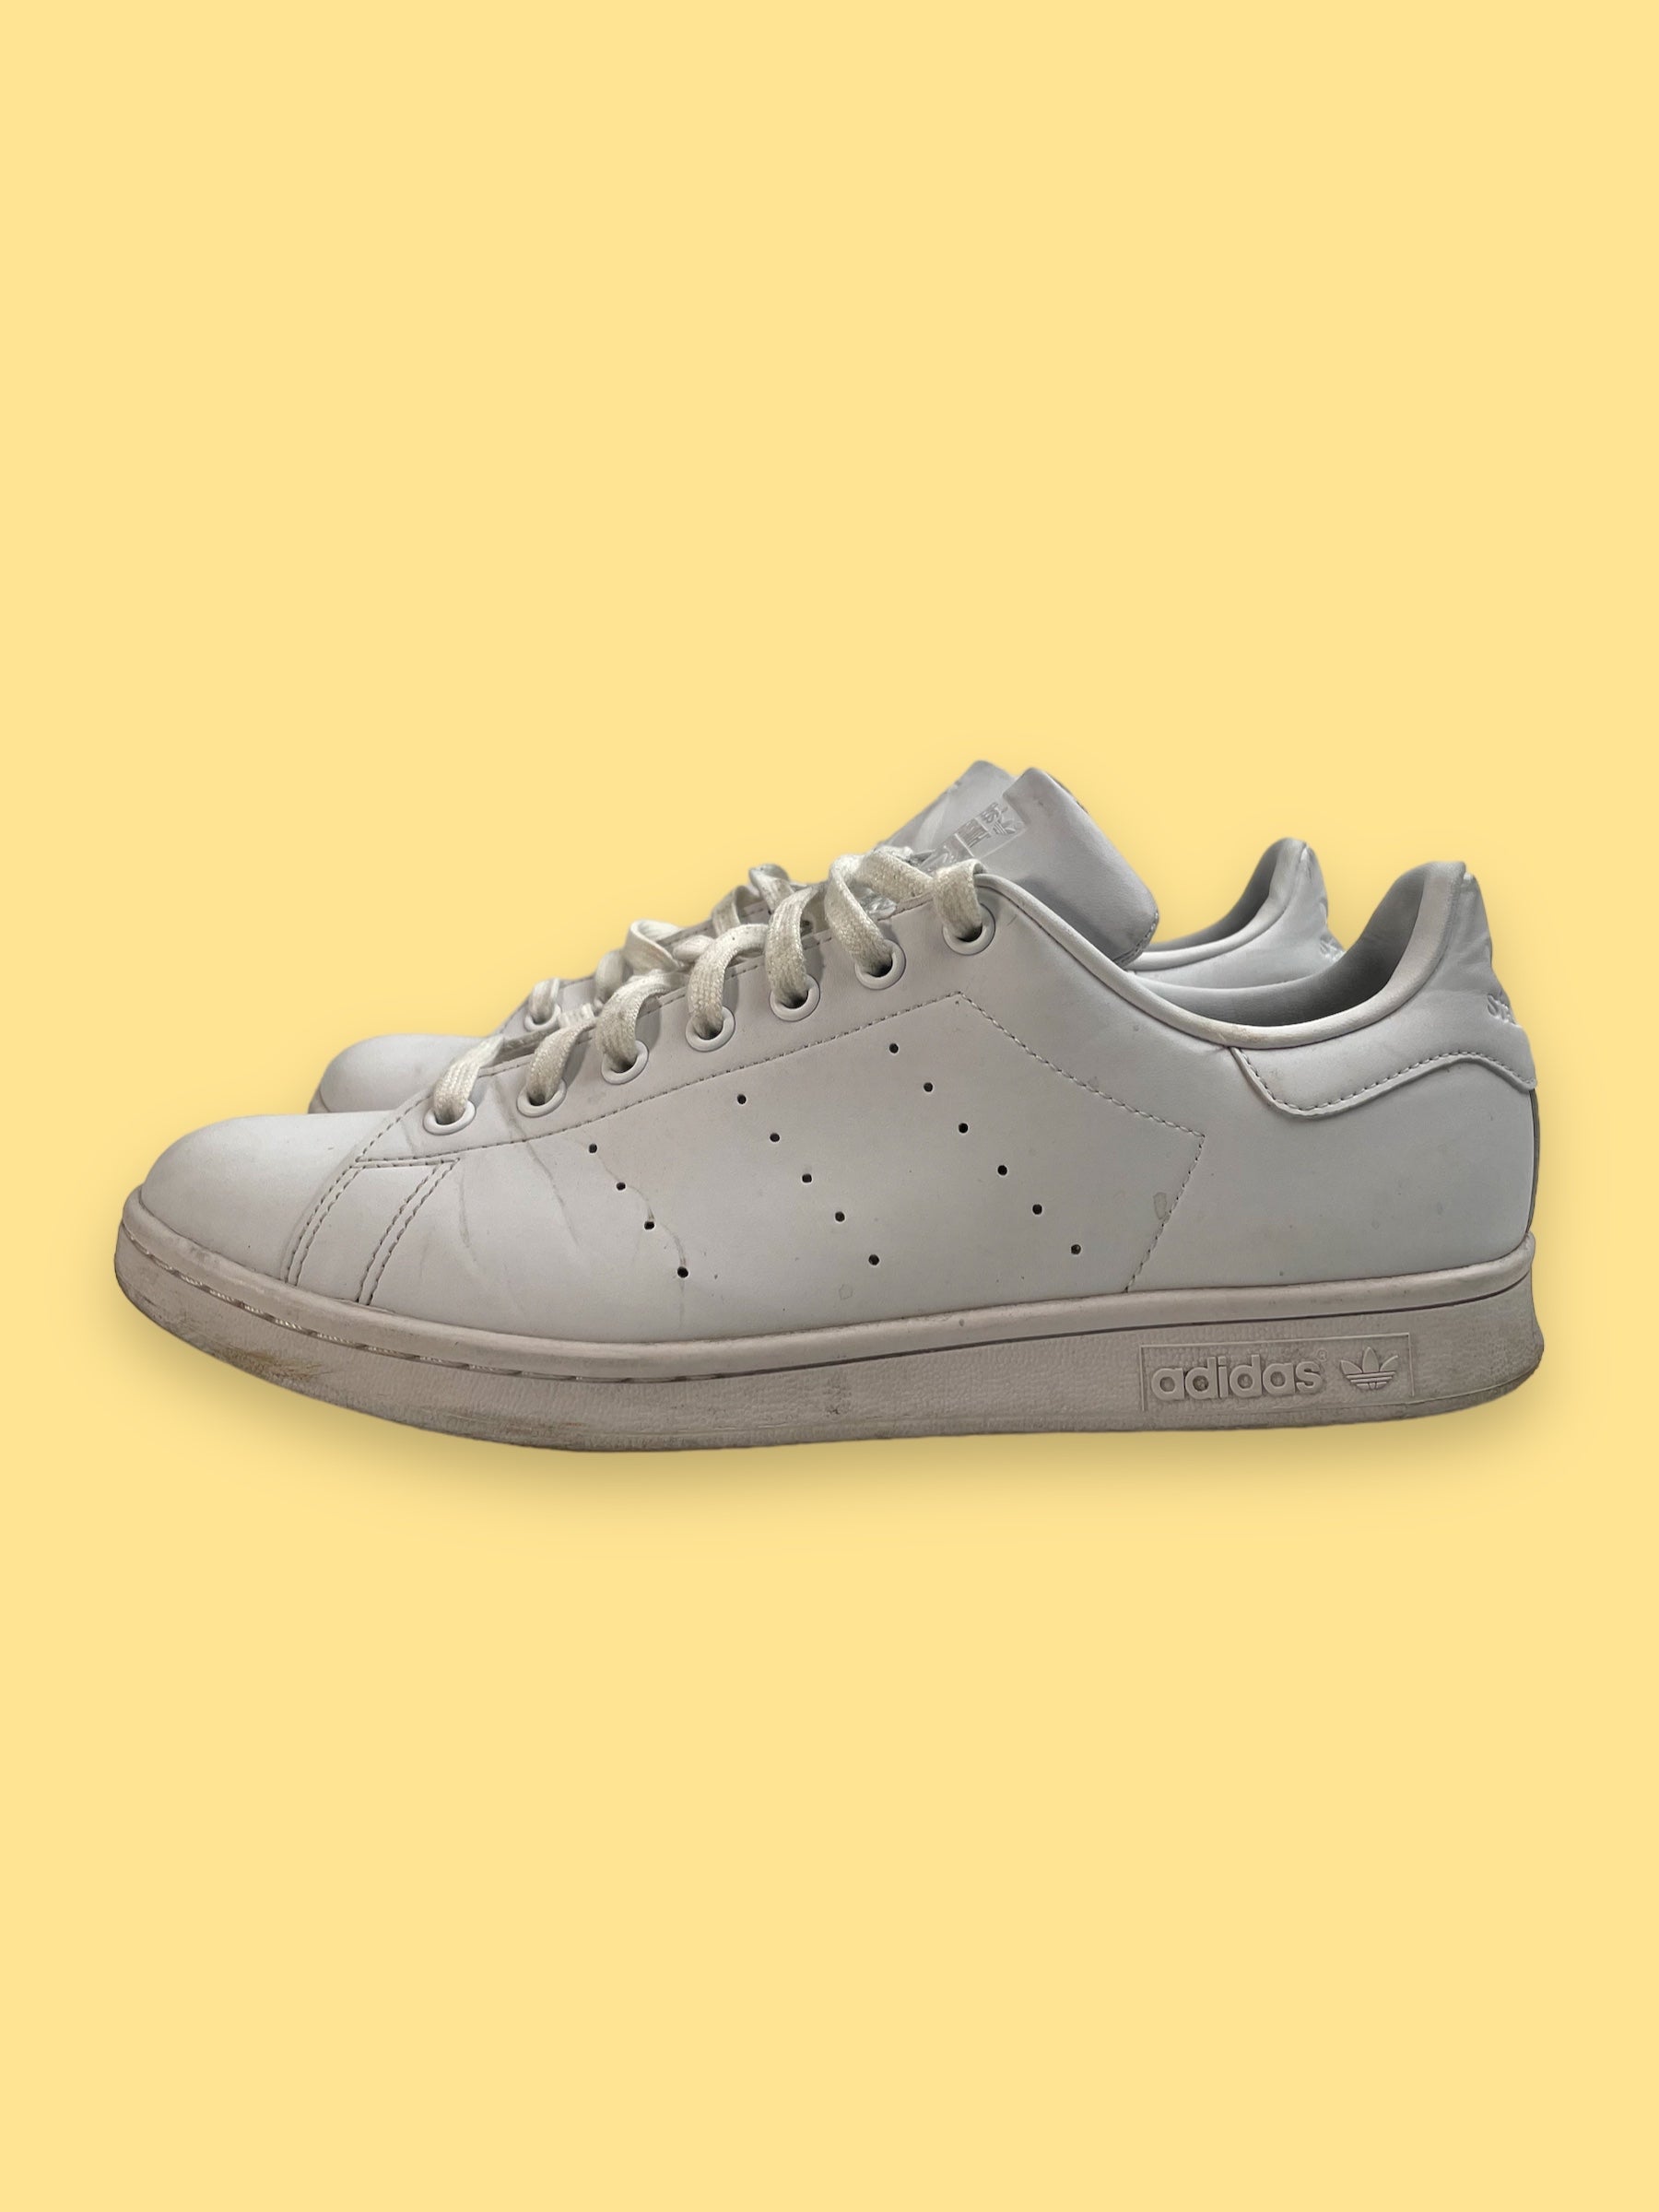 White Adidas Stan Smith shoes - Men Size 10